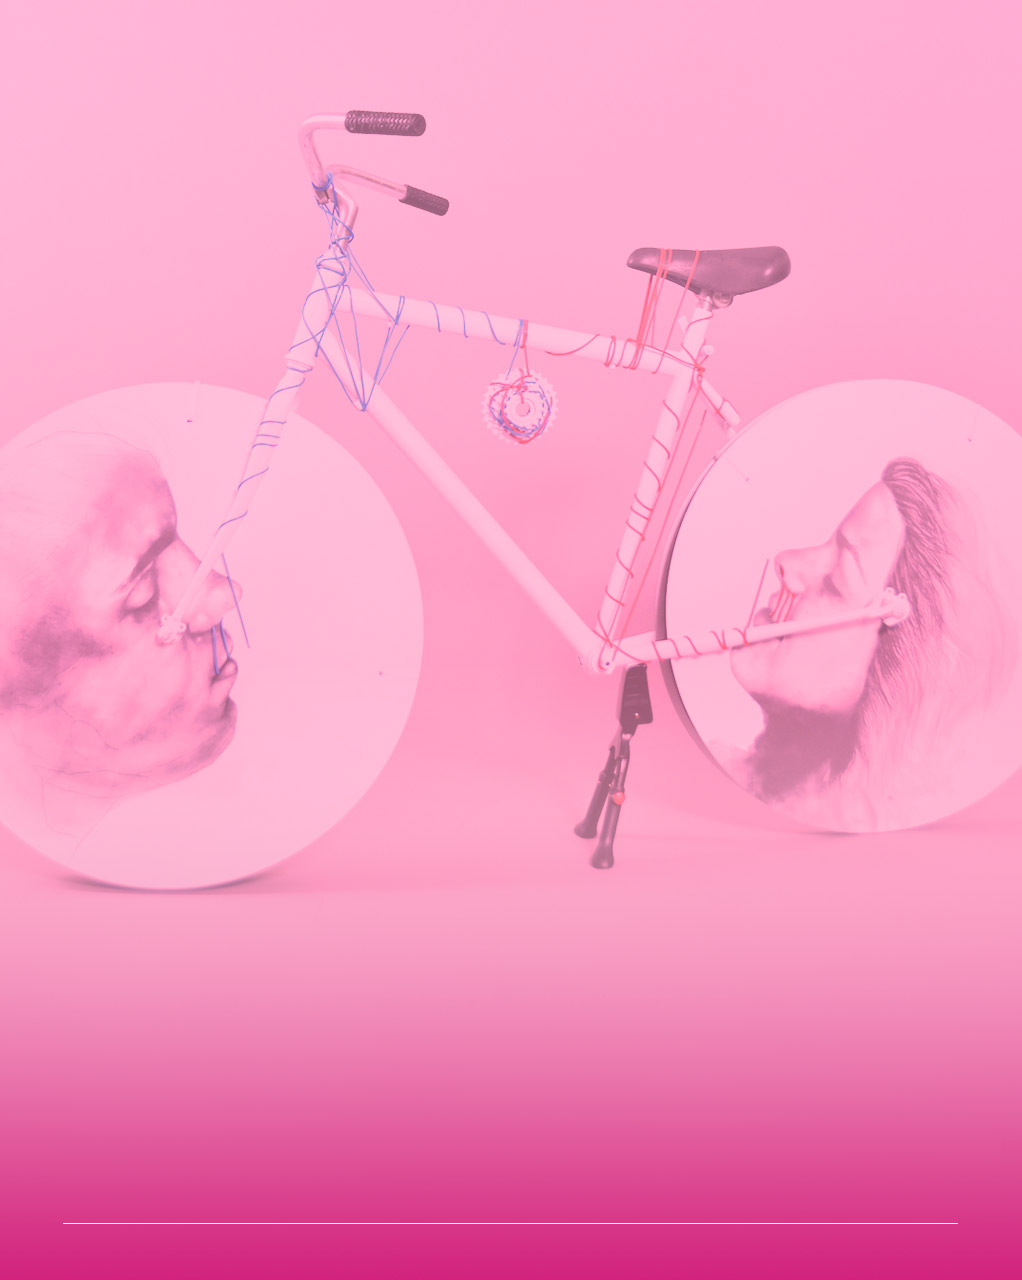 immagine di una bicicletta rielaborata con dipinti circolari al posto delle ruote e fili colorati intorno a tutta la struttura